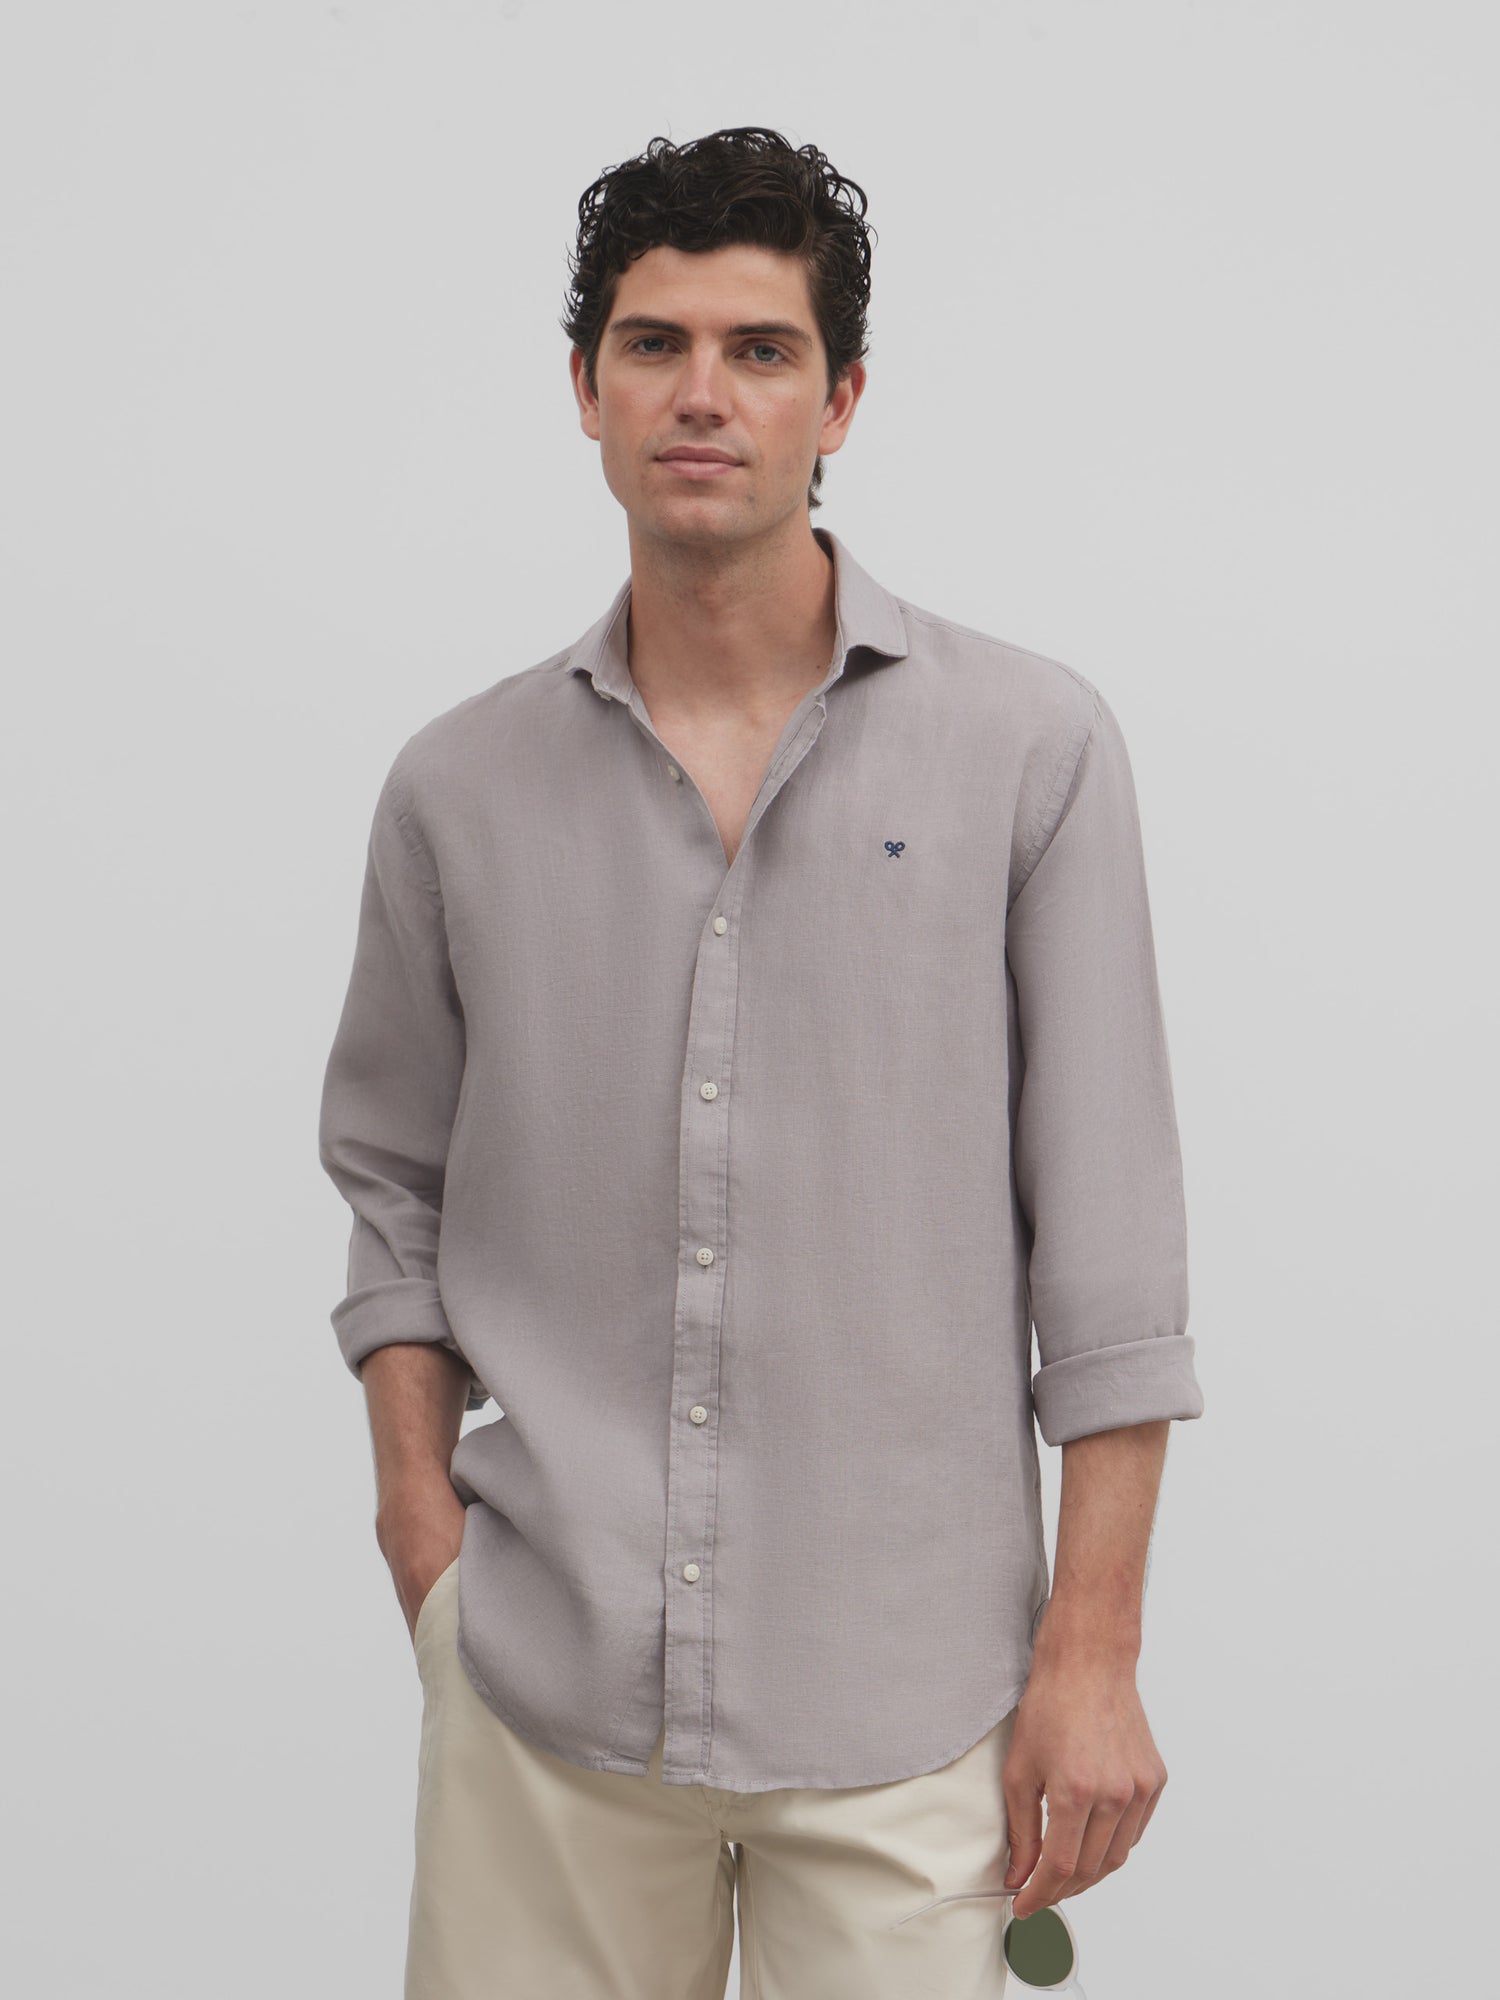 Gray linen sport shirt